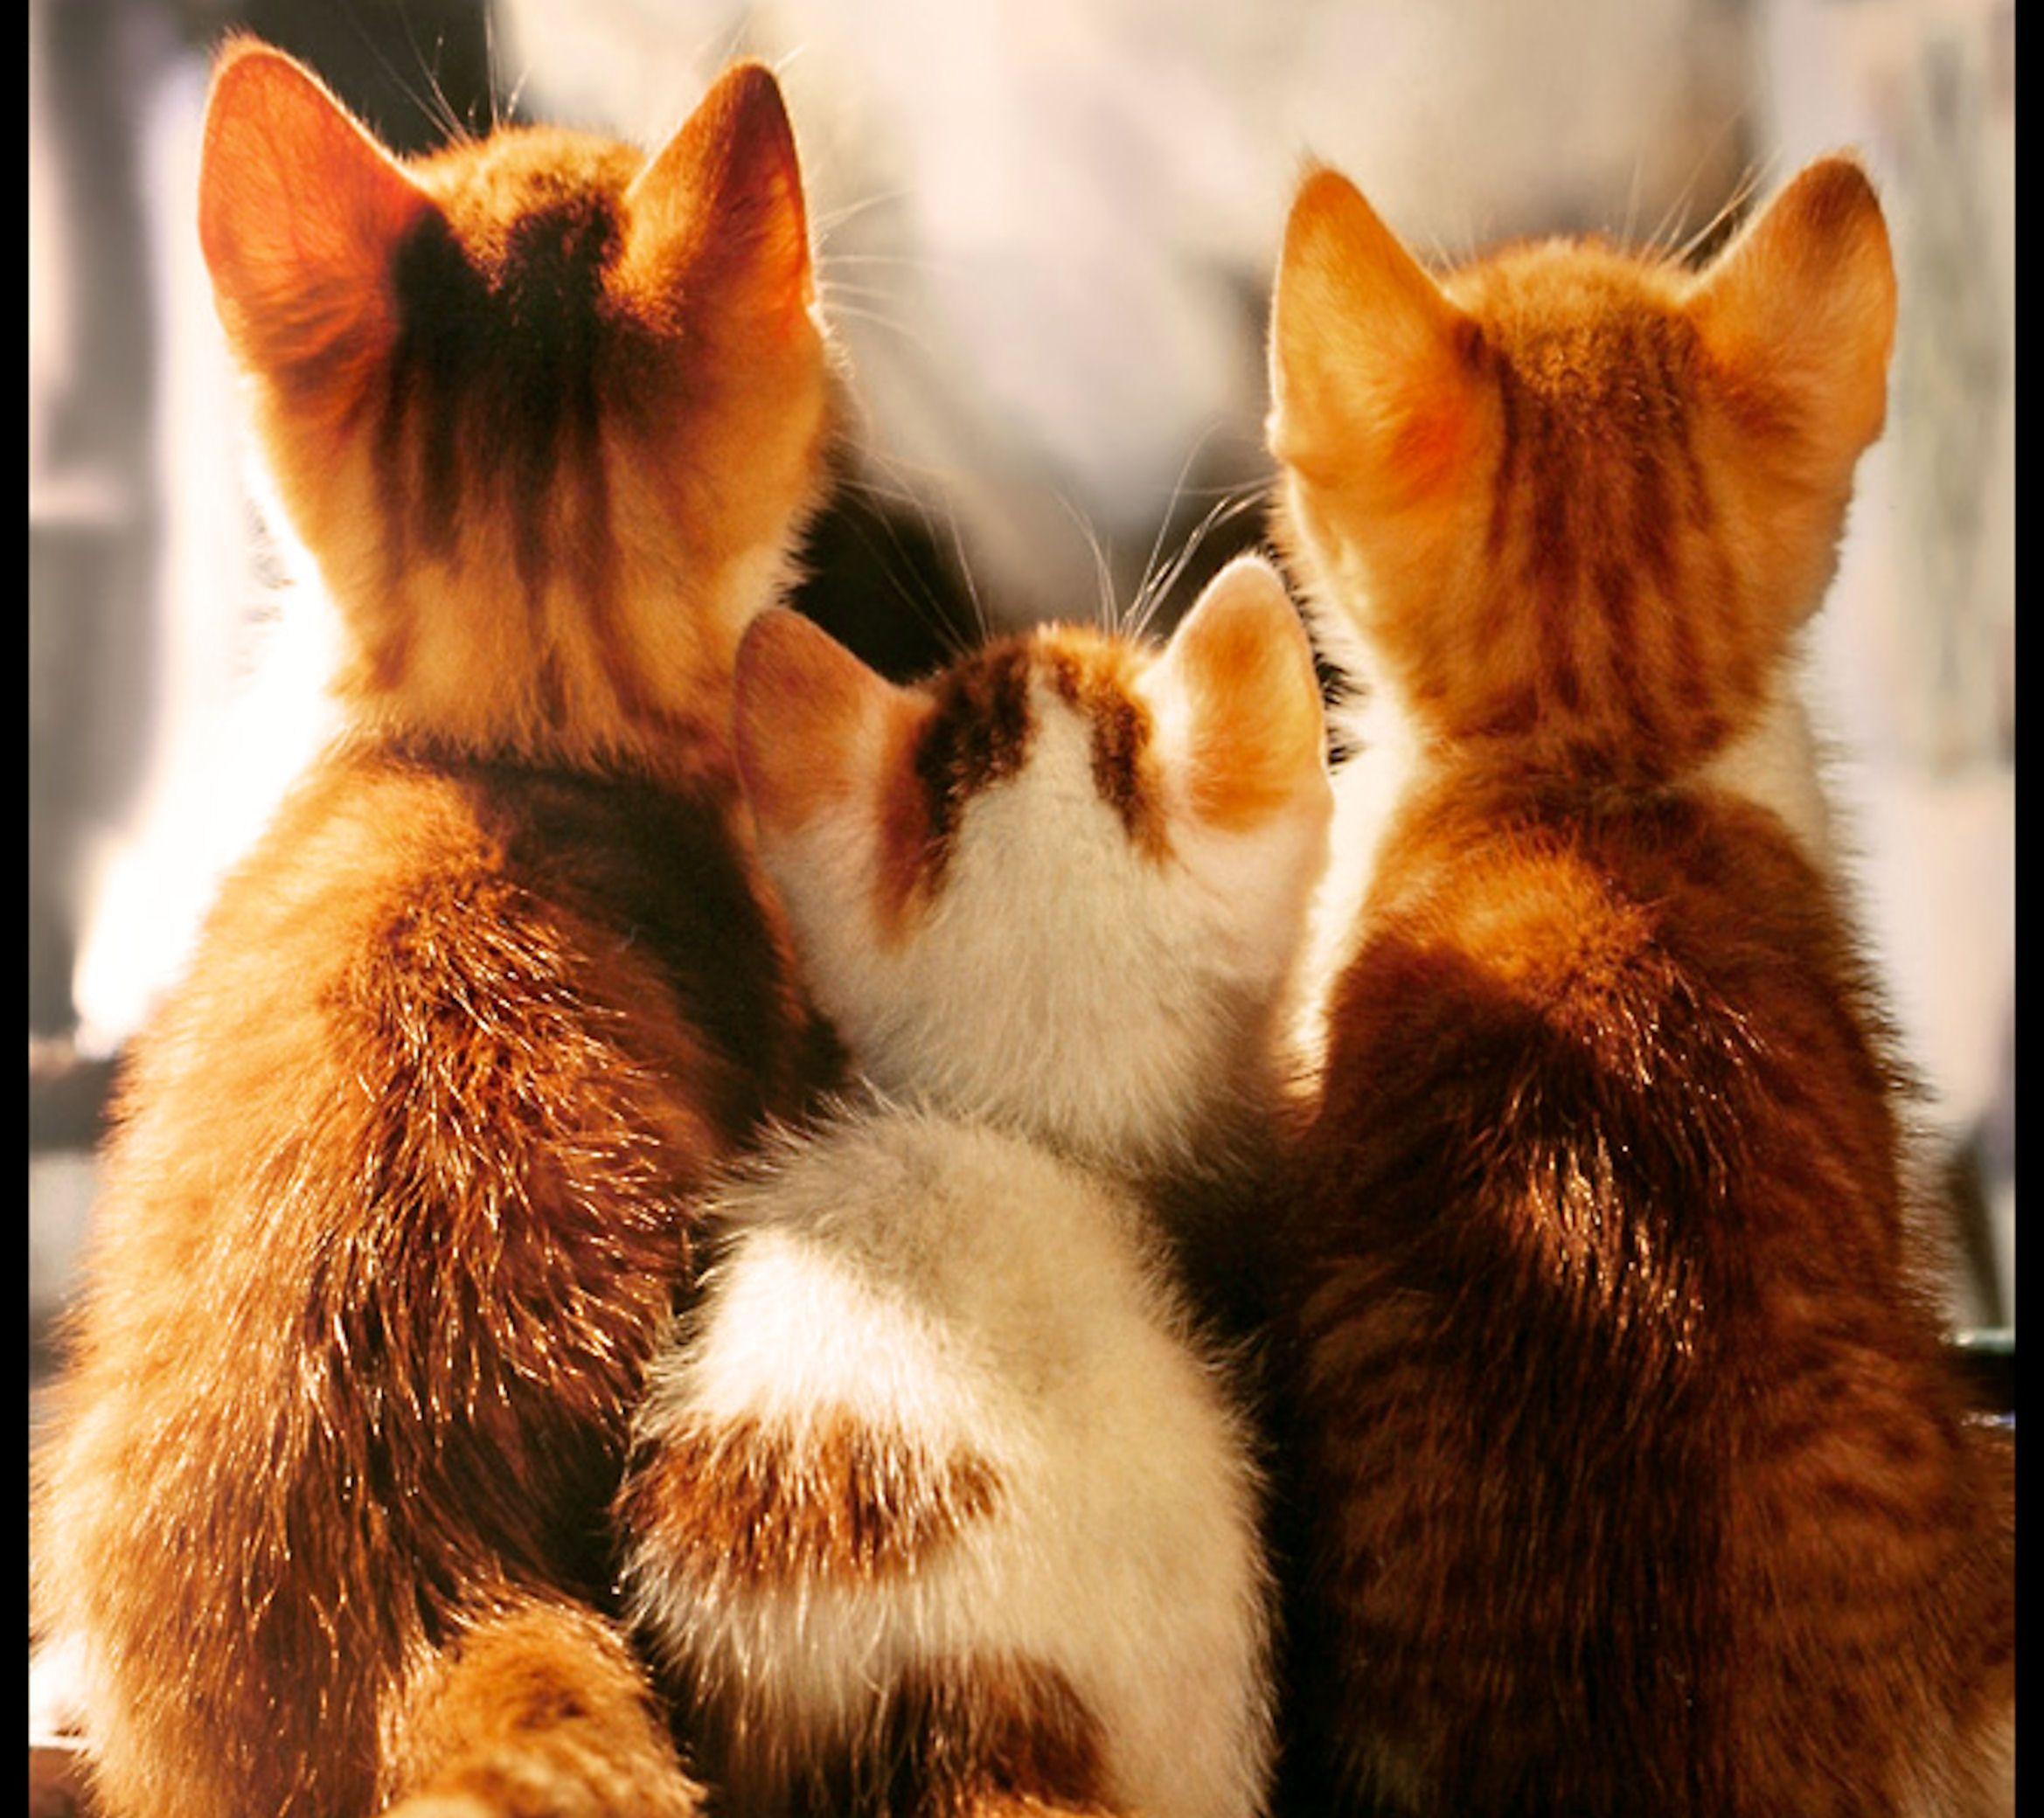 Three Cats wallpaper HD free. Cats, Cute cats, Kittens